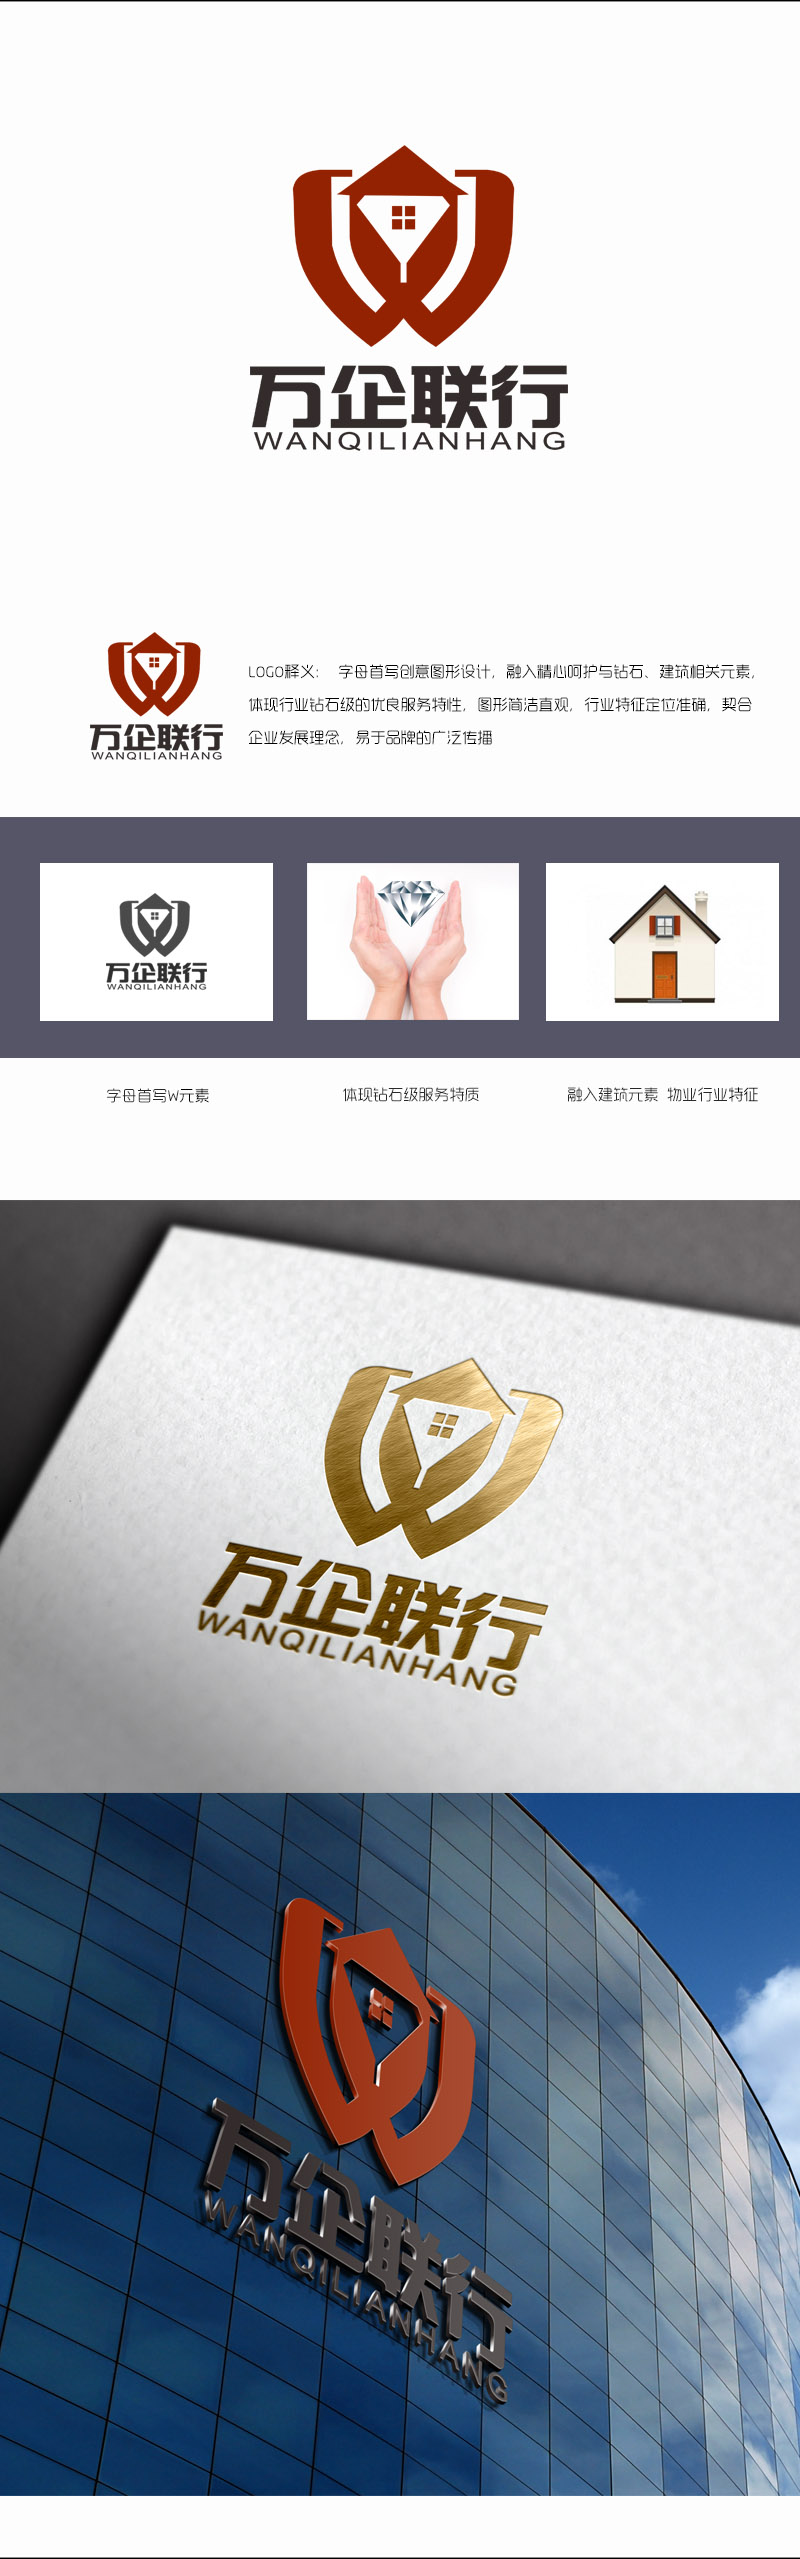 郭庆忠的万企联行物业服务有限公司logo设计